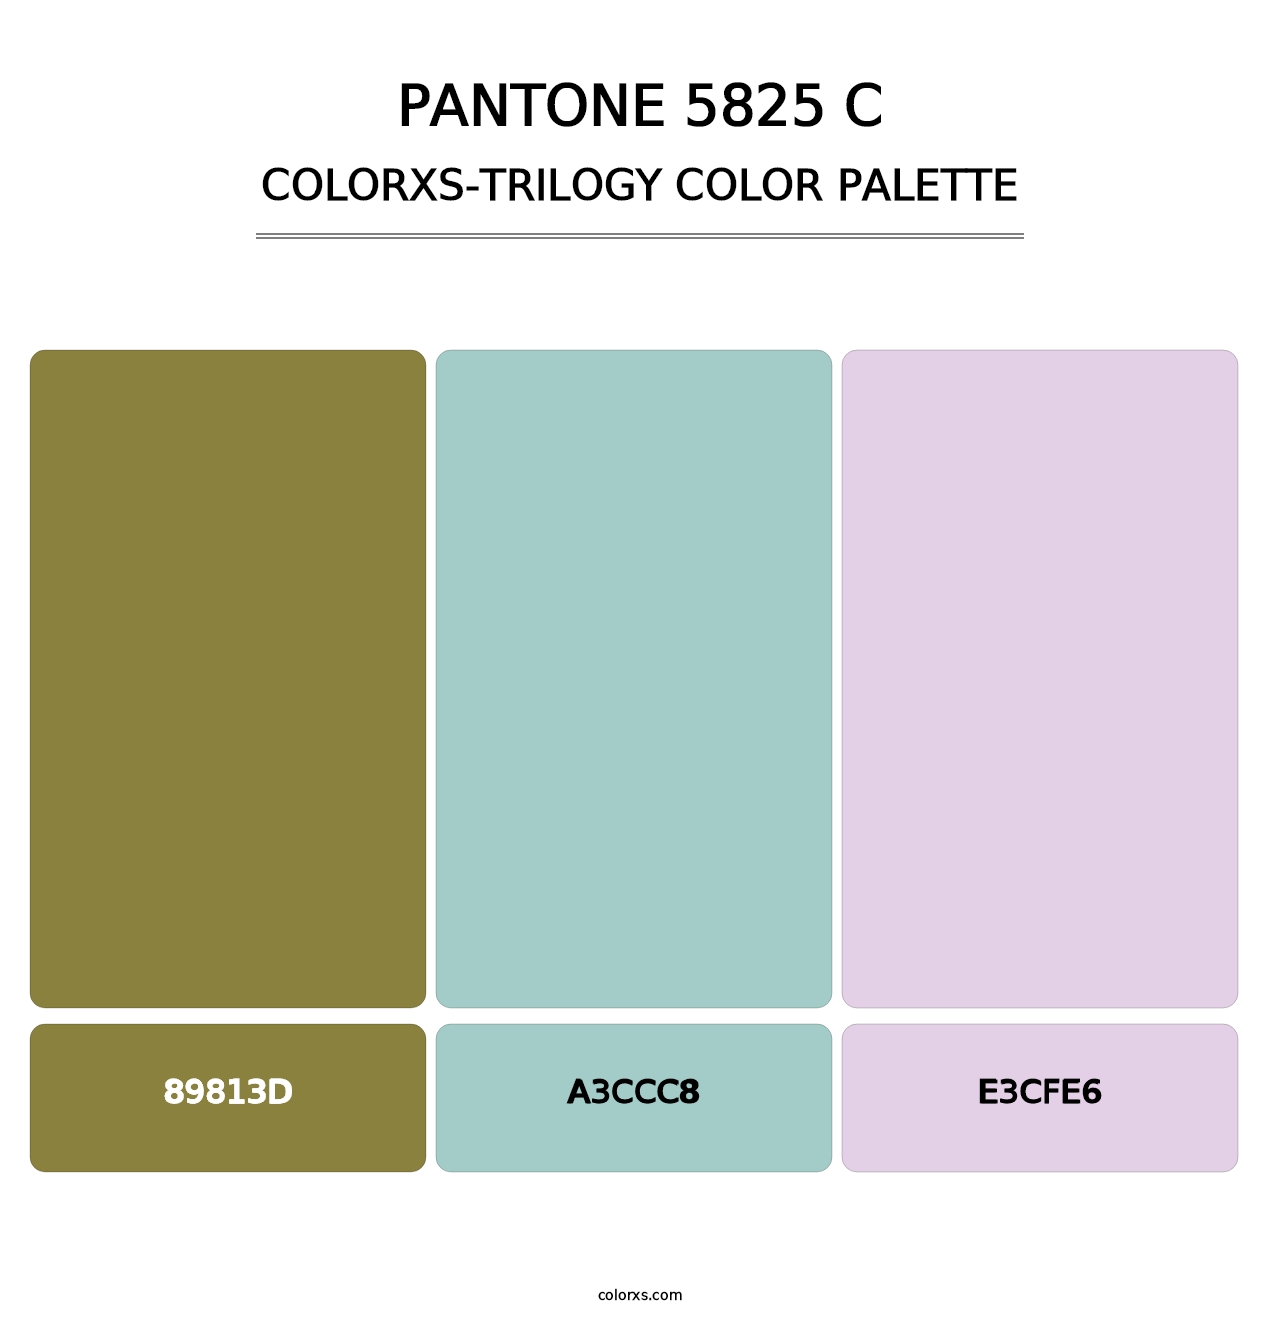 PANTONE 5825 C - Colorxs Trilogy Palette